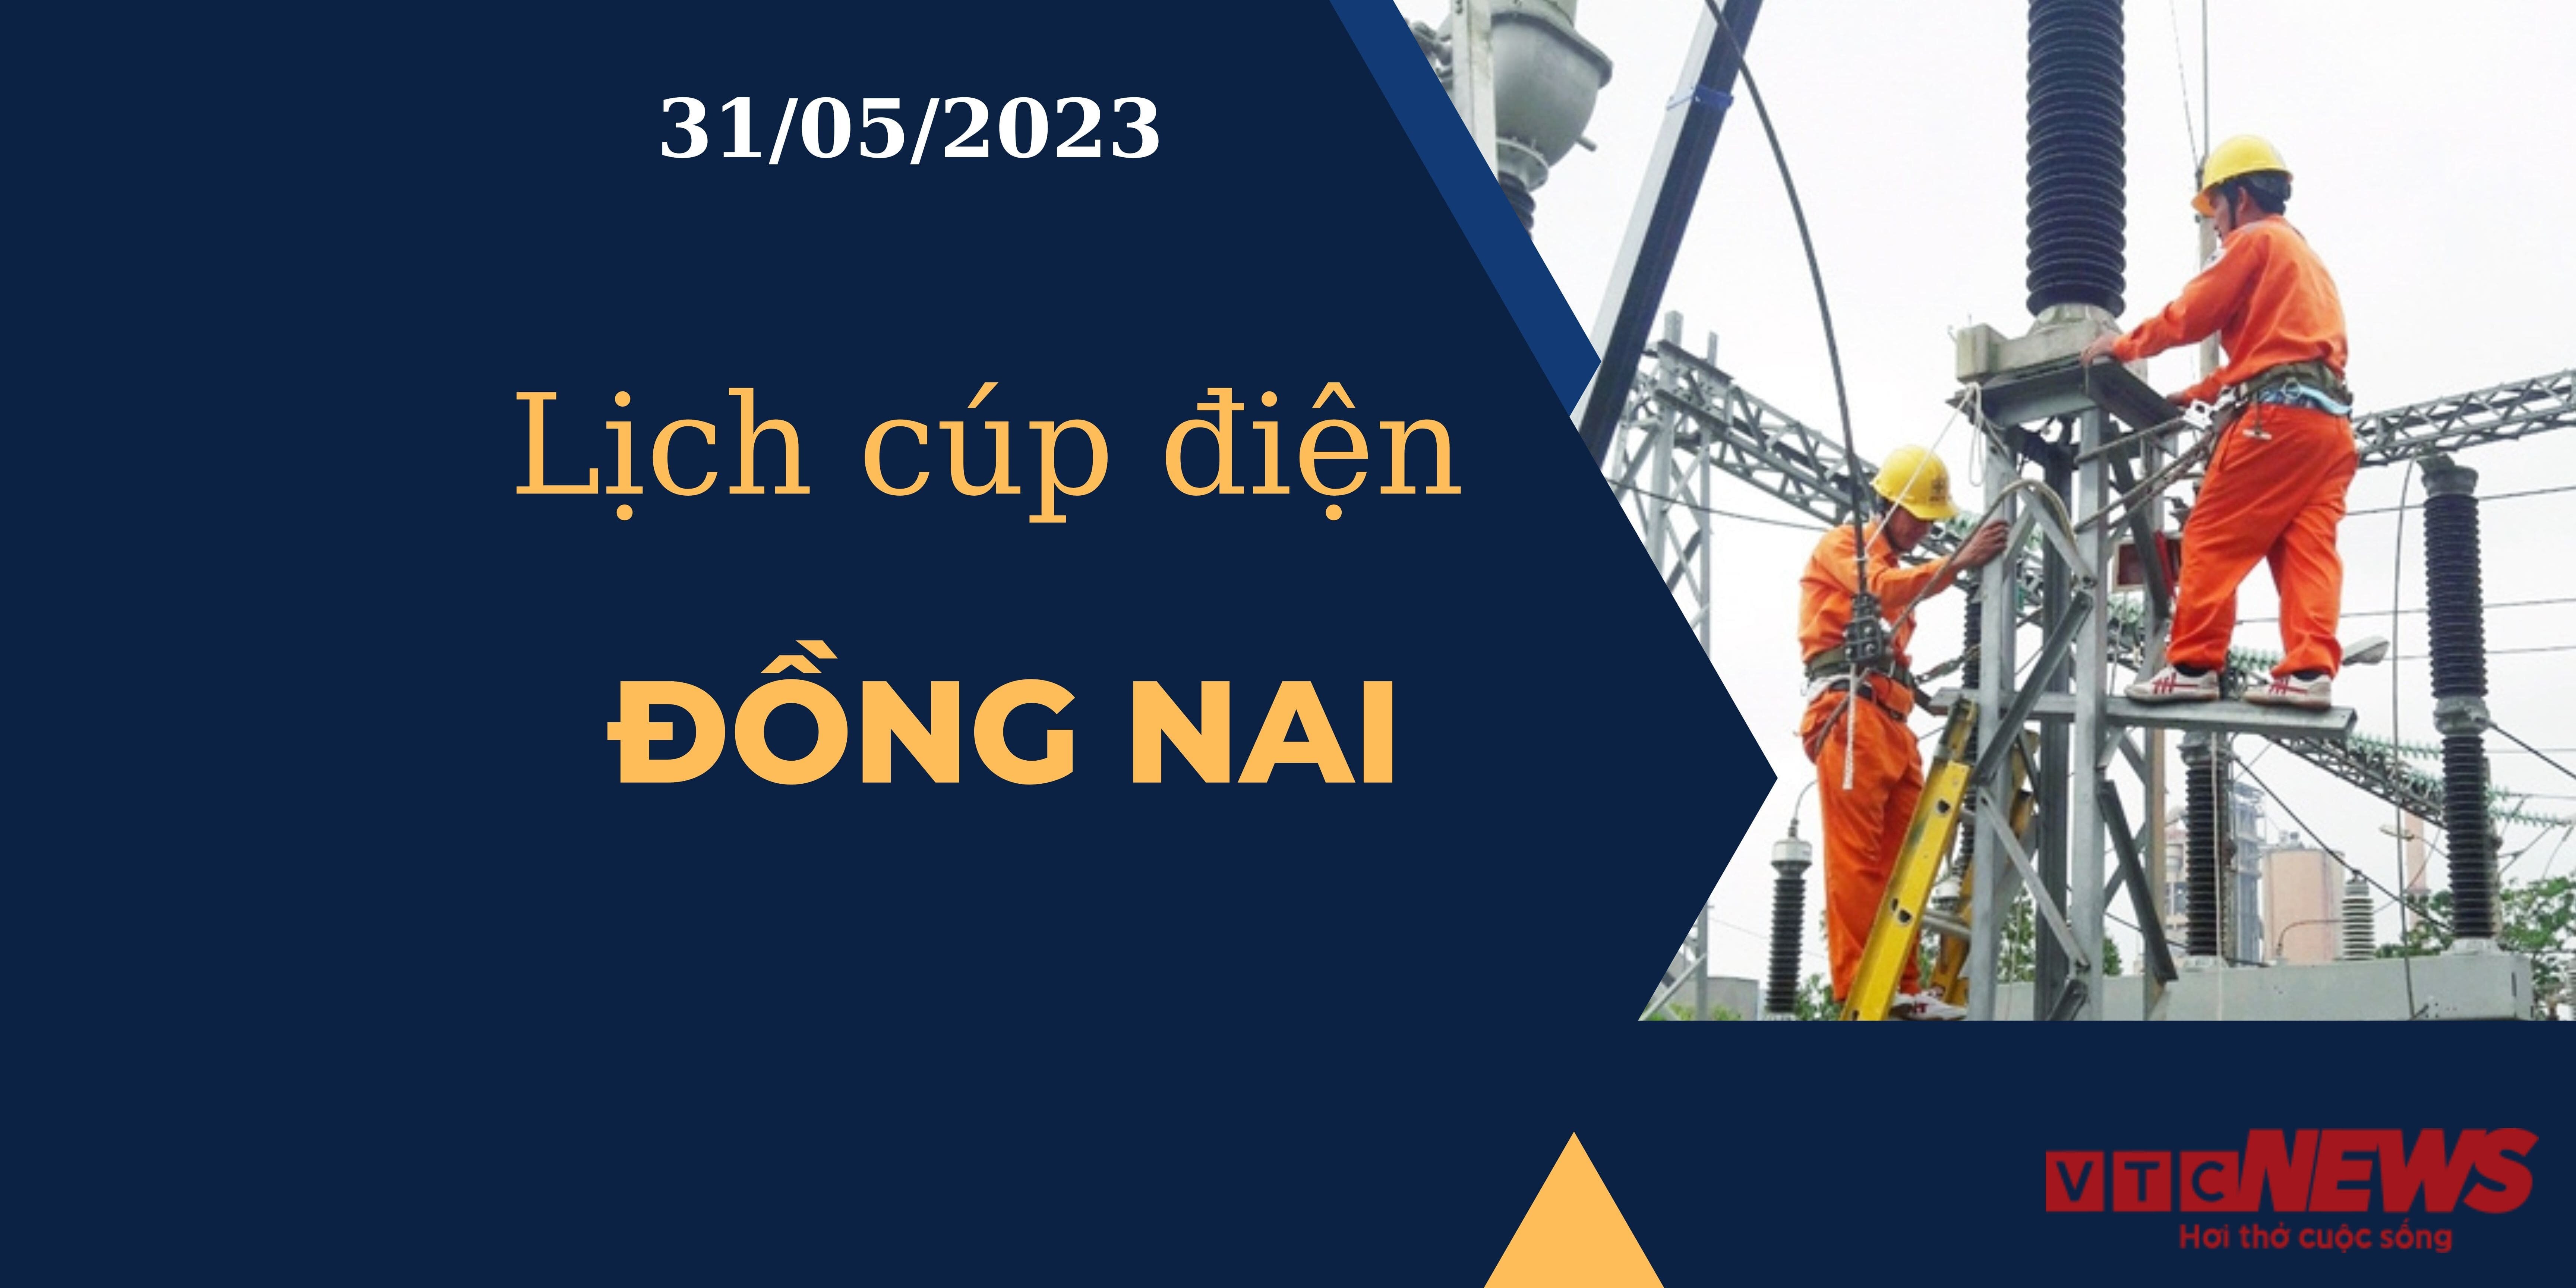 Lịch cúp điện hôm nay ngày 31/05/2023 tại Đồng Nai - 1